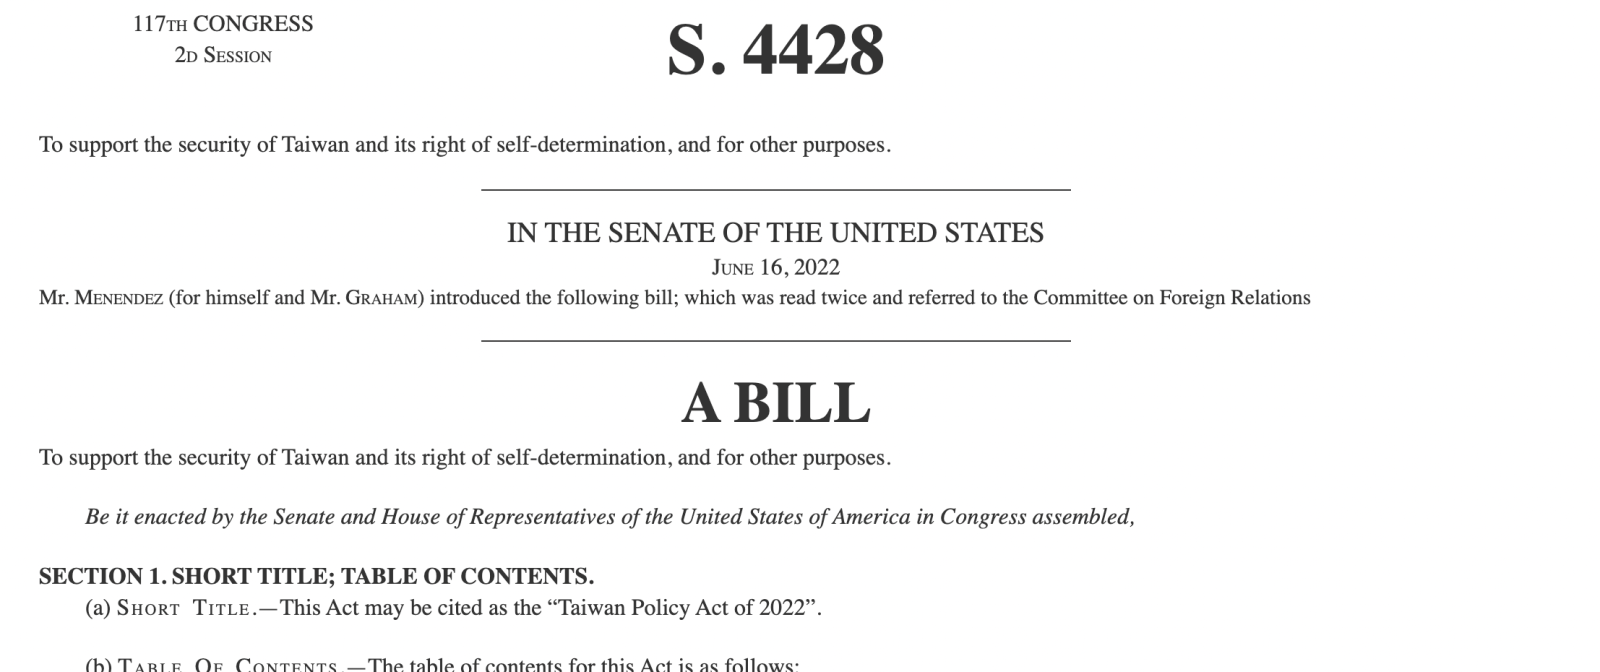 美國參議院預定9月14日審2022台灣政策法。 翻攝congress.gov網頁